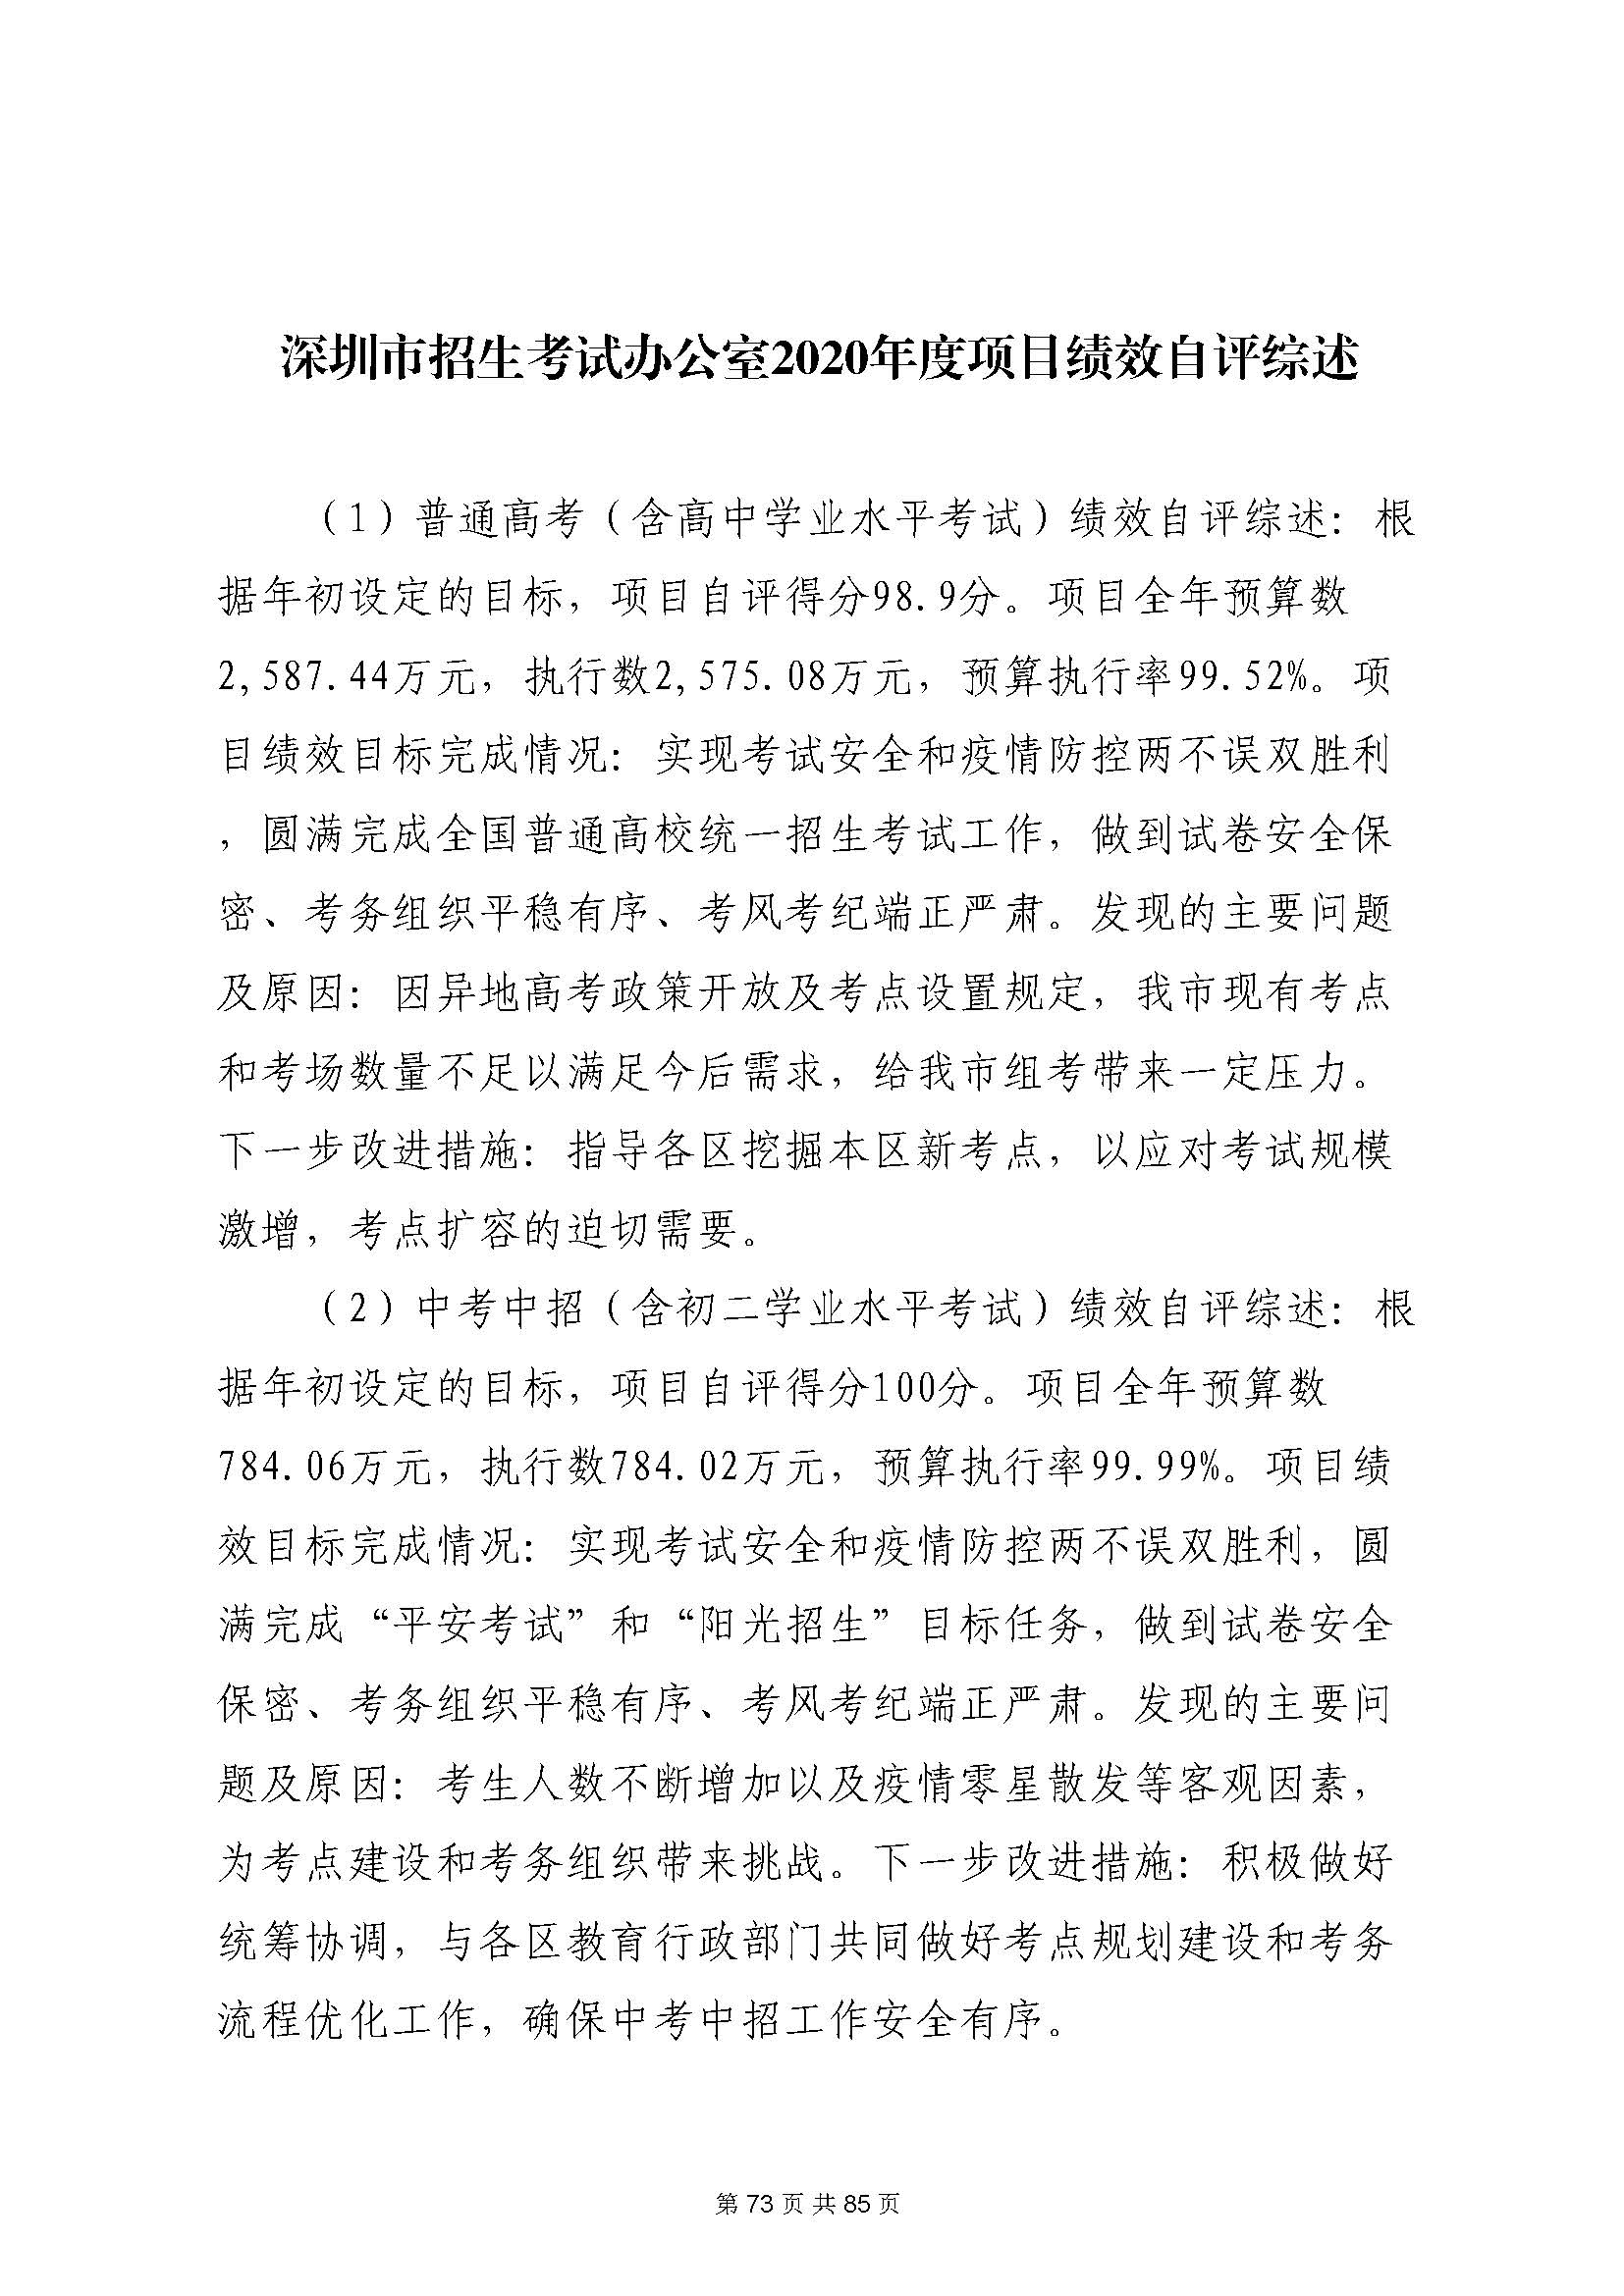 深圳市招生考试办公室2020年度部门决算_页面_74.jpg